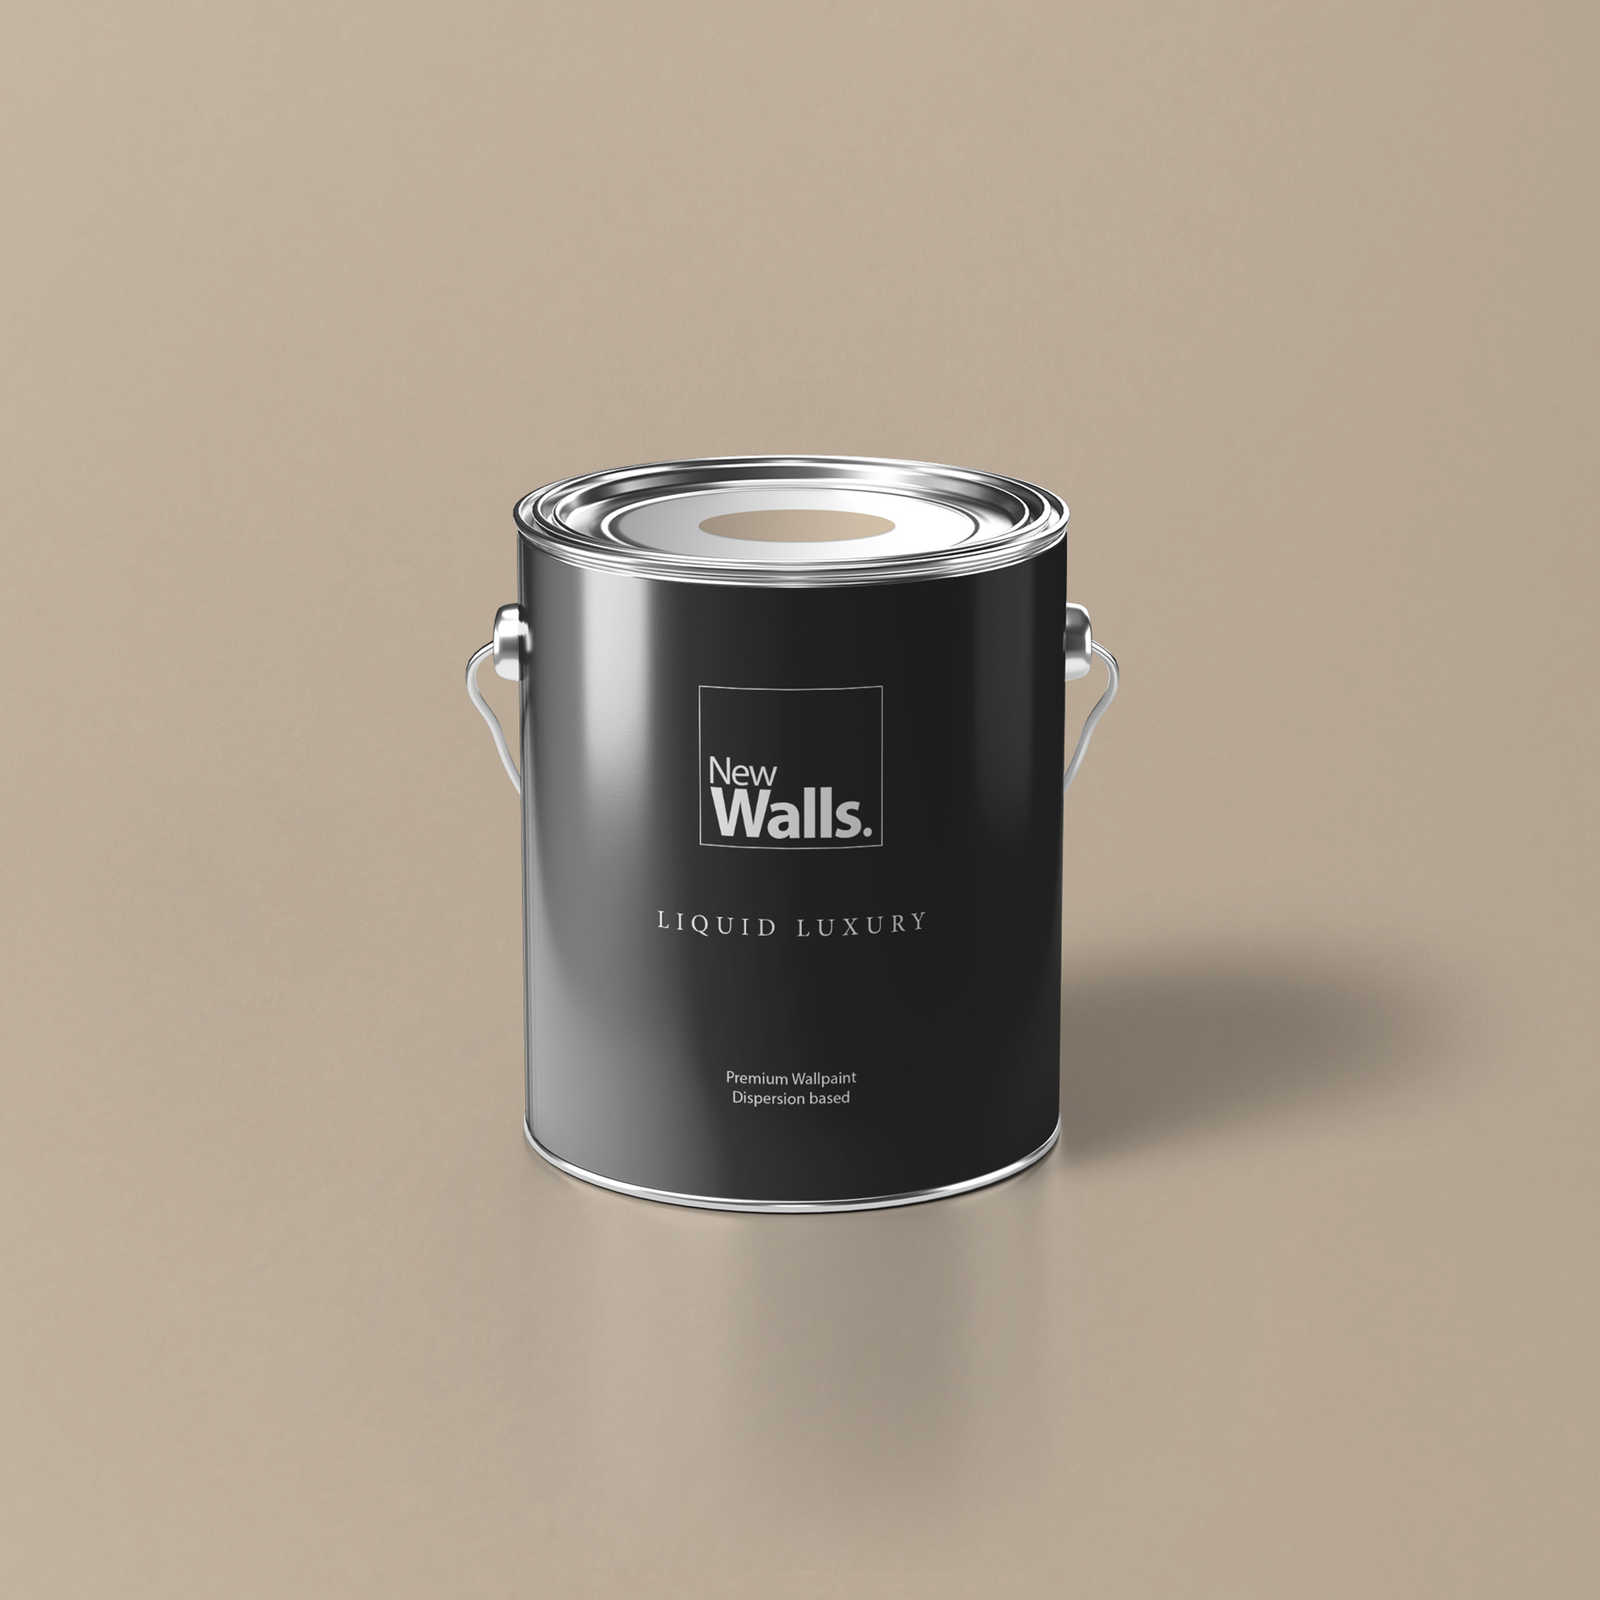 Premium Wall Paint Timeless Light Beige »Modern Mud« NW715 – 2.5 litre
